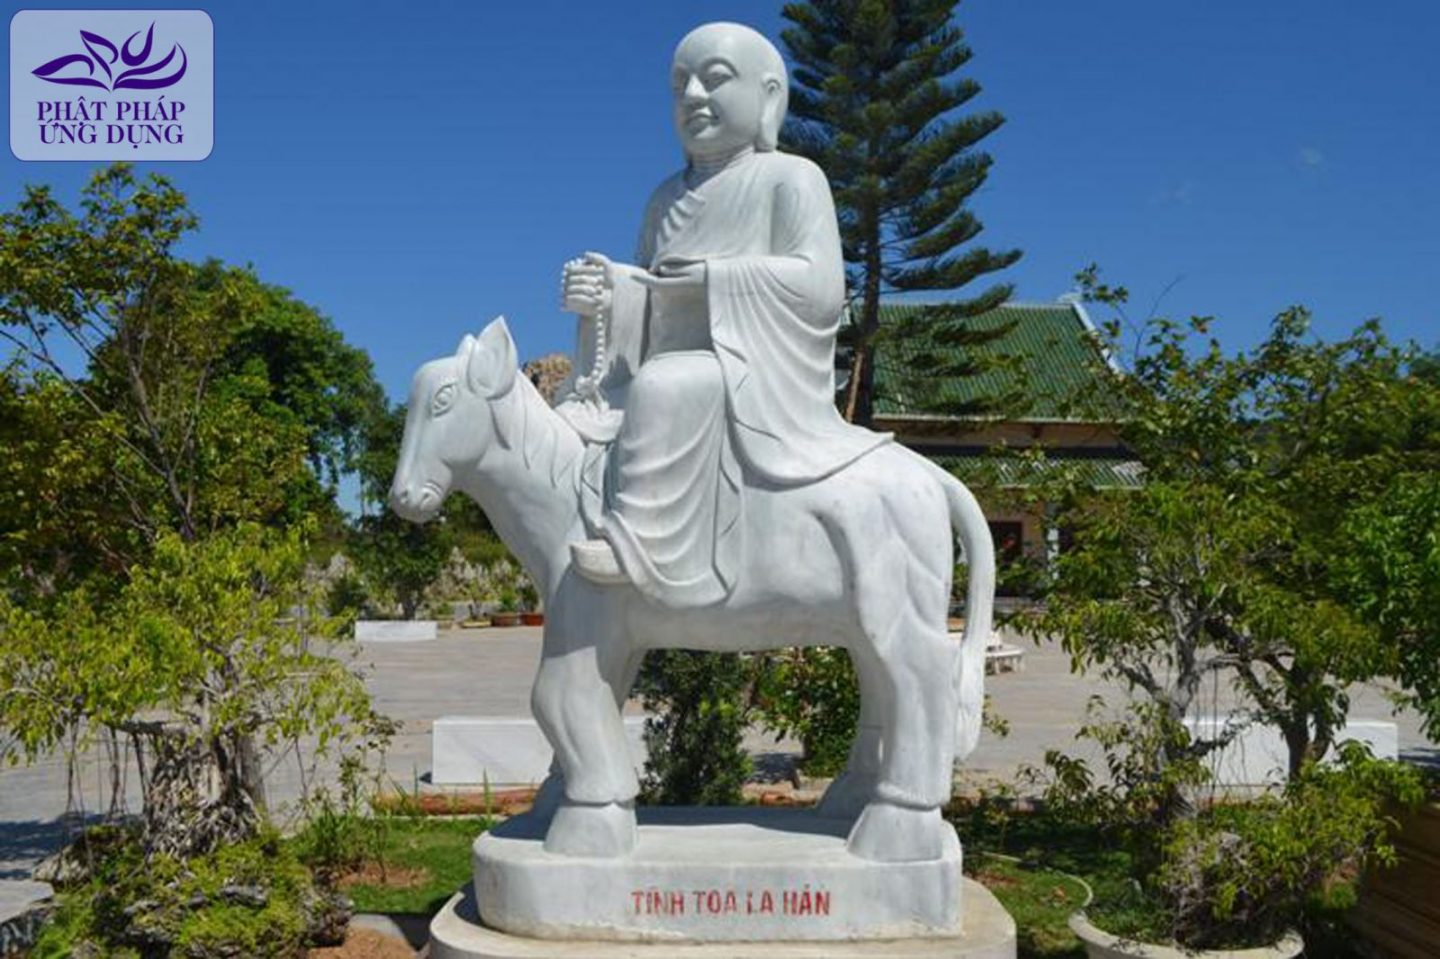 Chùa Linh Ứng: Chiêm ngưỡng Tượng Phật Bà và 18 vị La Hán lớn nhất Việt Nam